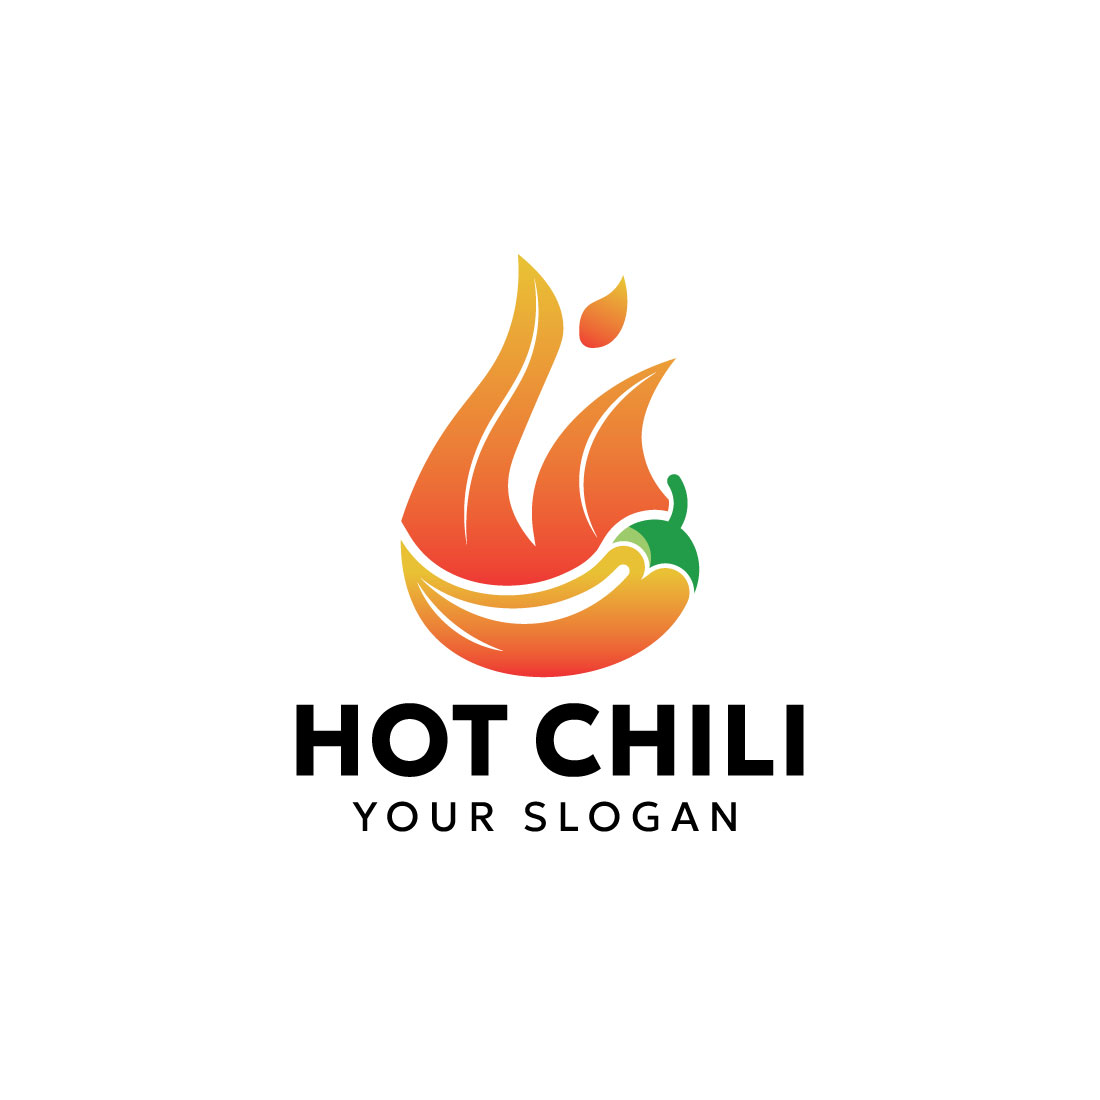 Hot chili fire logo design cover image.